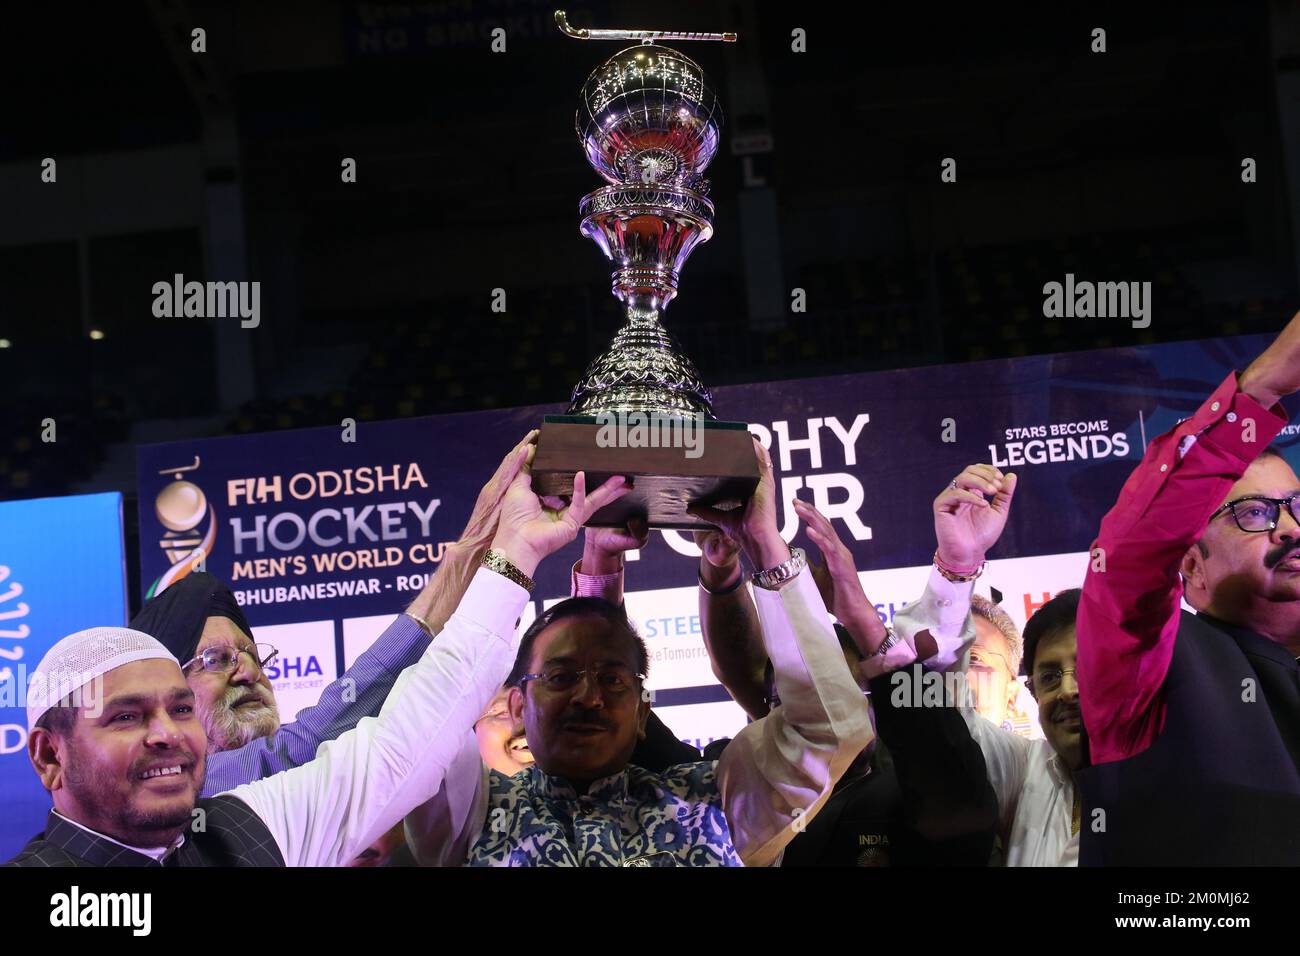 Kolkata, Bengale occidental, Inde. 6th décembre 2022. La tournée des trophées de la prochaine édition 15th de la coupe du monde de hockey des hommes FIH est présentée lors d'un événement à Kolkata. (Credit image: © Dipa Chakraborty/Pacific Press via ZUMA Press Wire) Banque D'Images